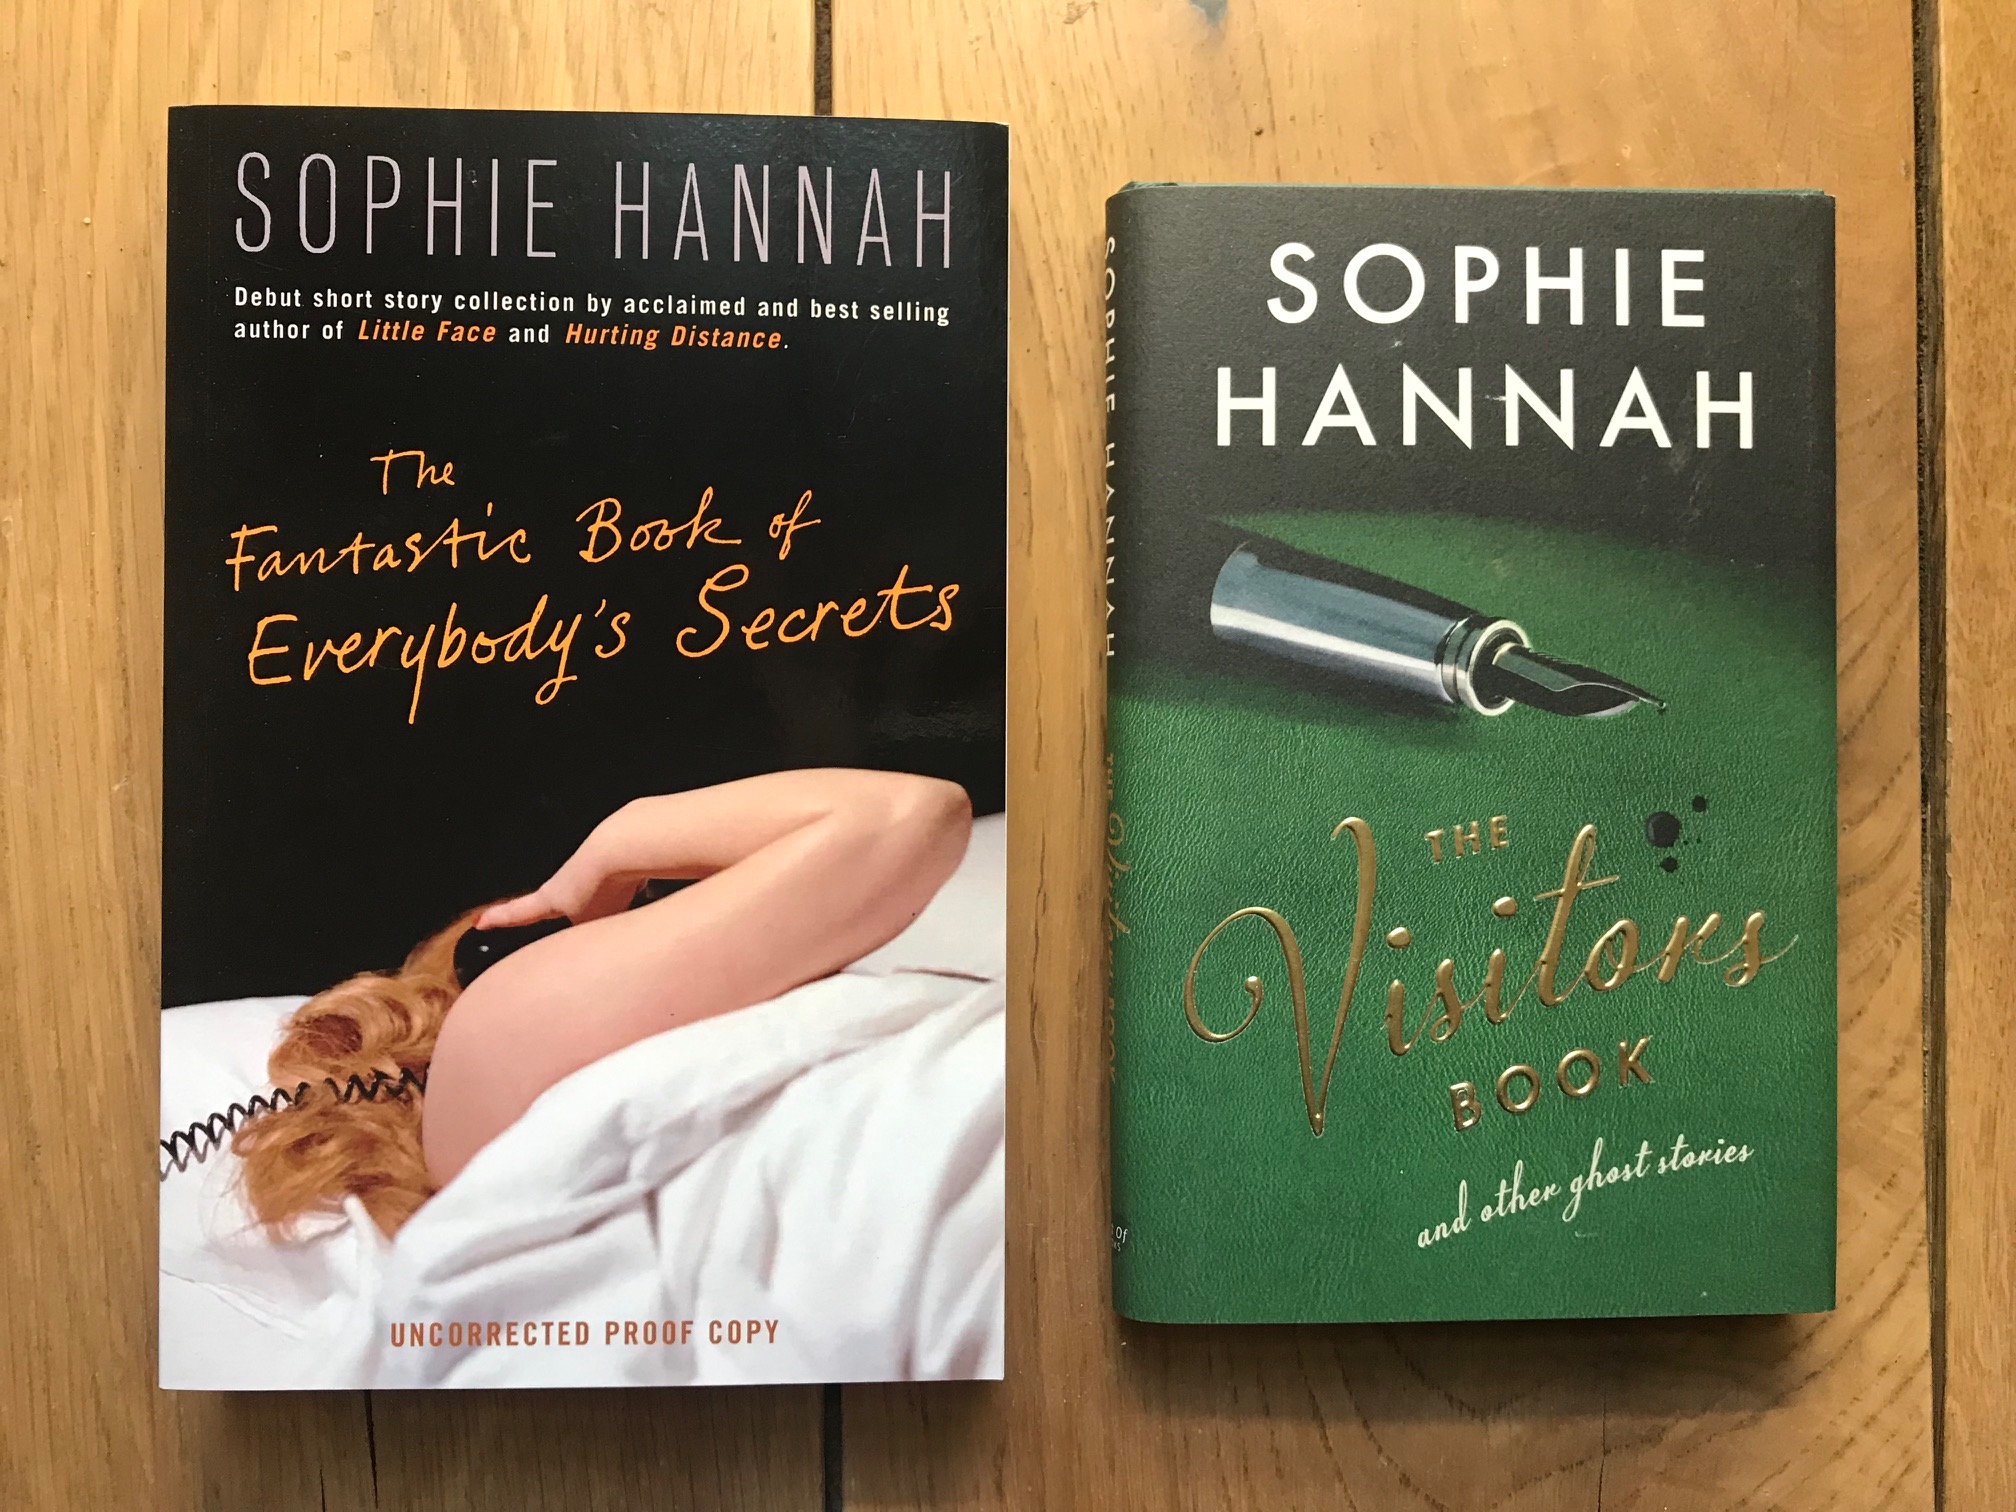 Sophie Hannah 2 books photo.jpg